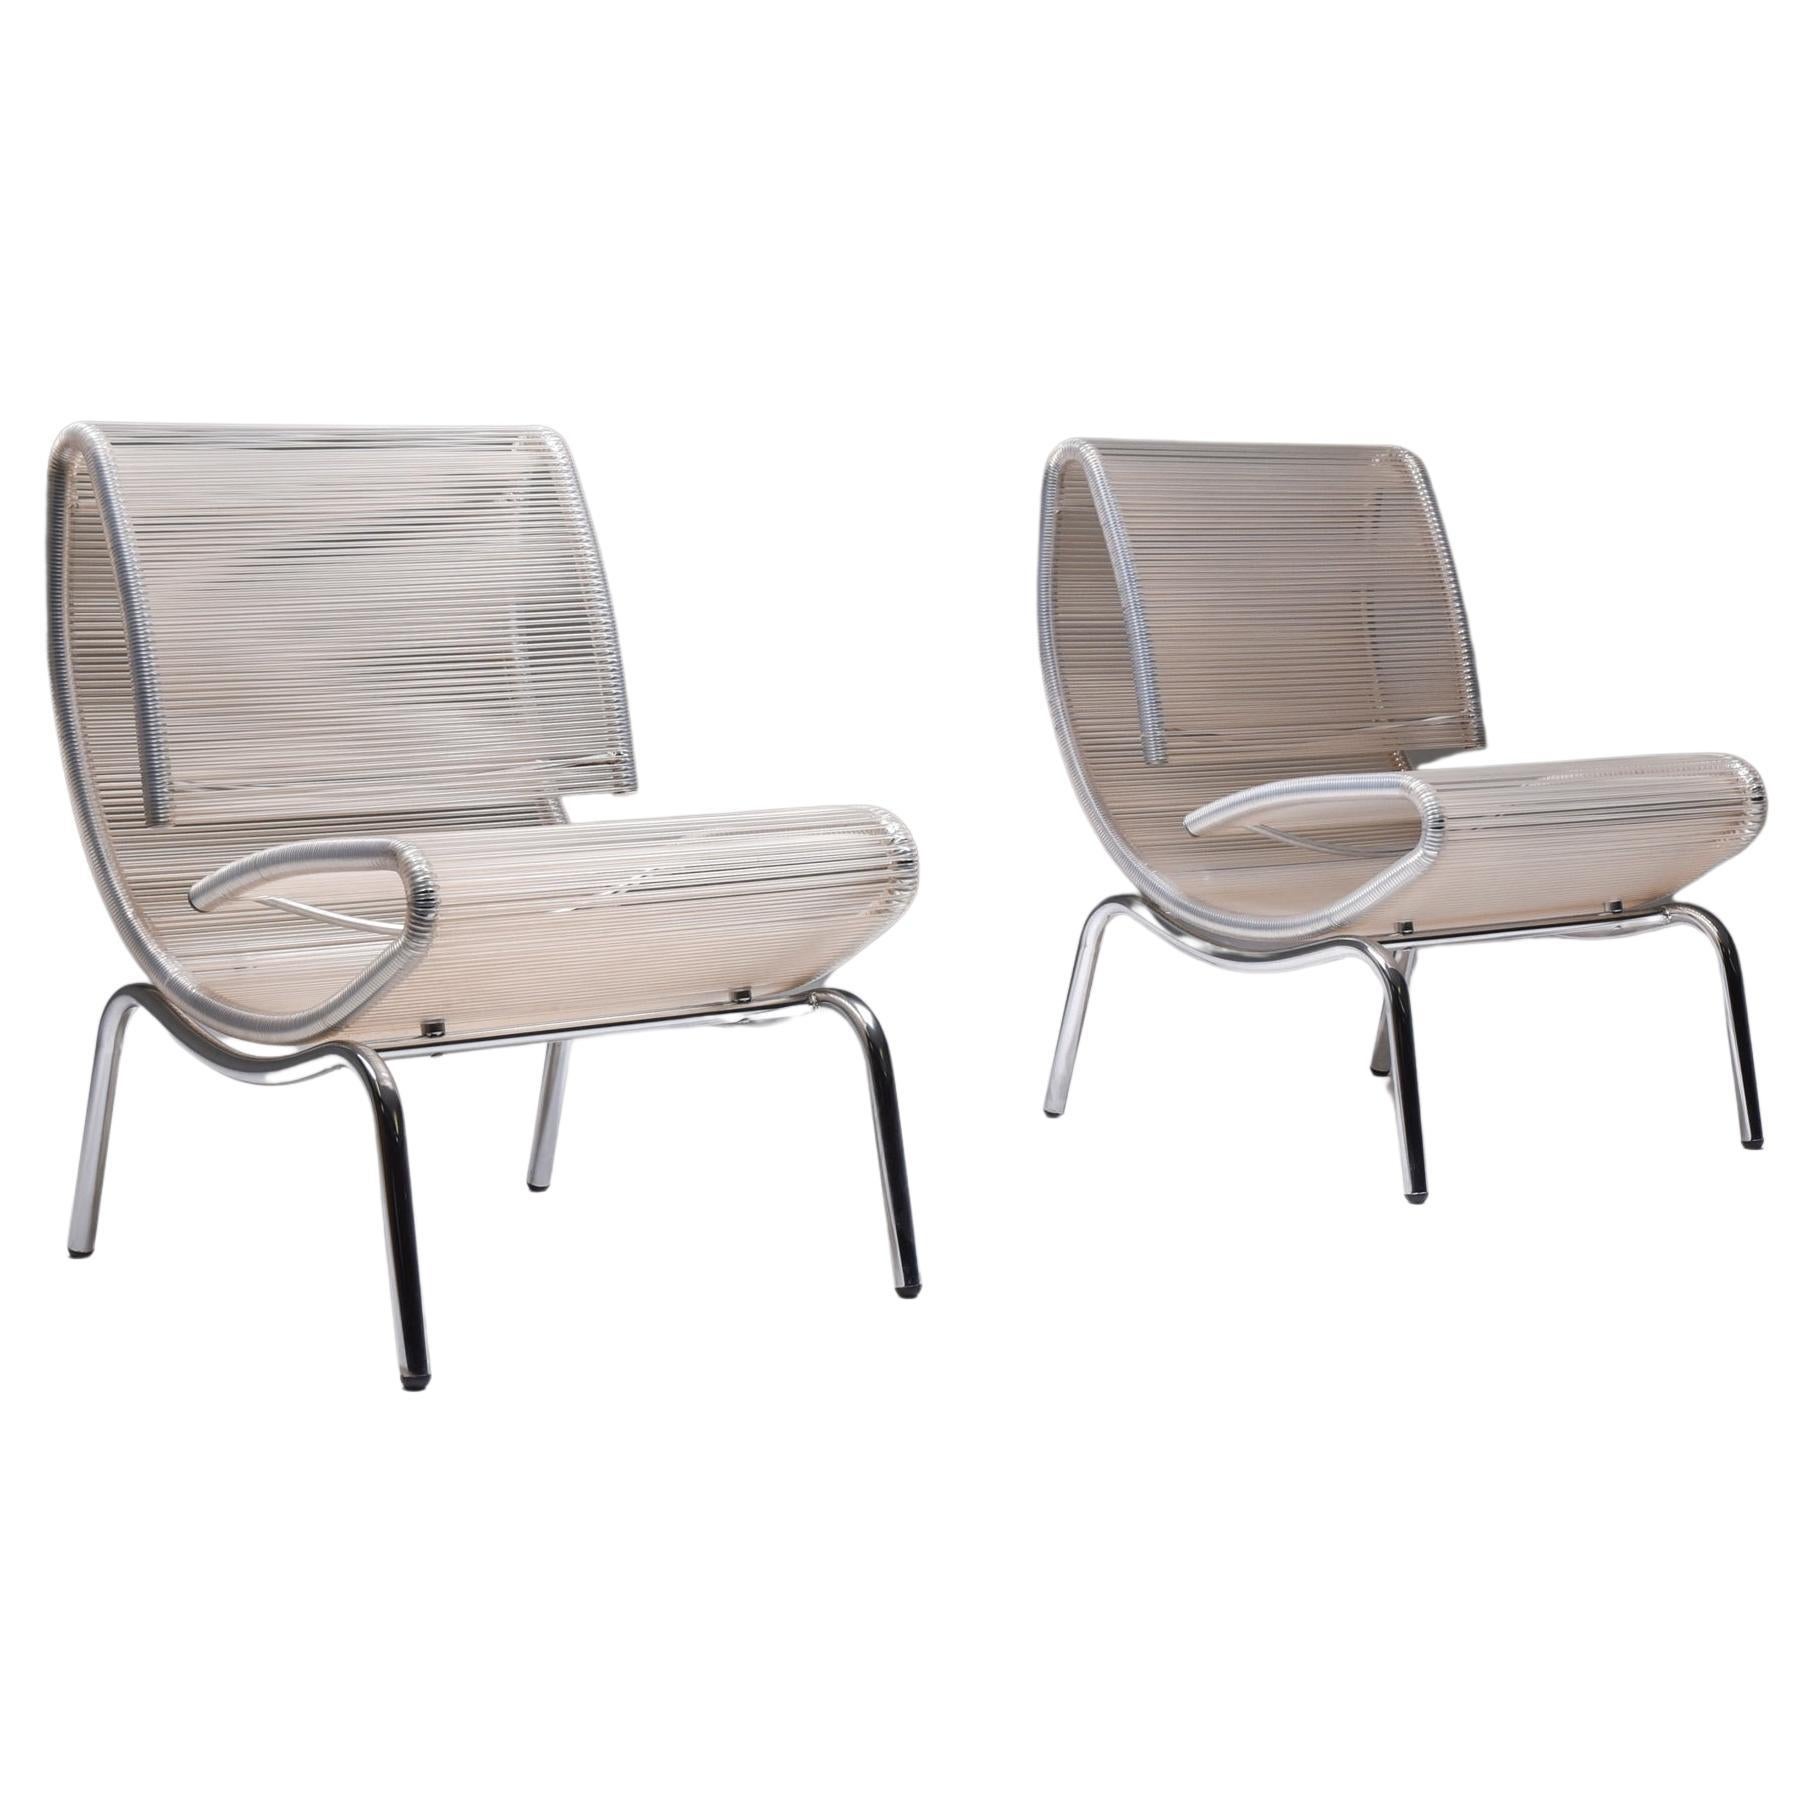 Pièce postmoderne, rappelant une chaise longue fermée, avec son design épuré. La translucidité subtile du fil de plastique confère un élégant effet de couleur nude, évoquant l'image d'une palourde semblable à une huître. C'est une création vertueuse